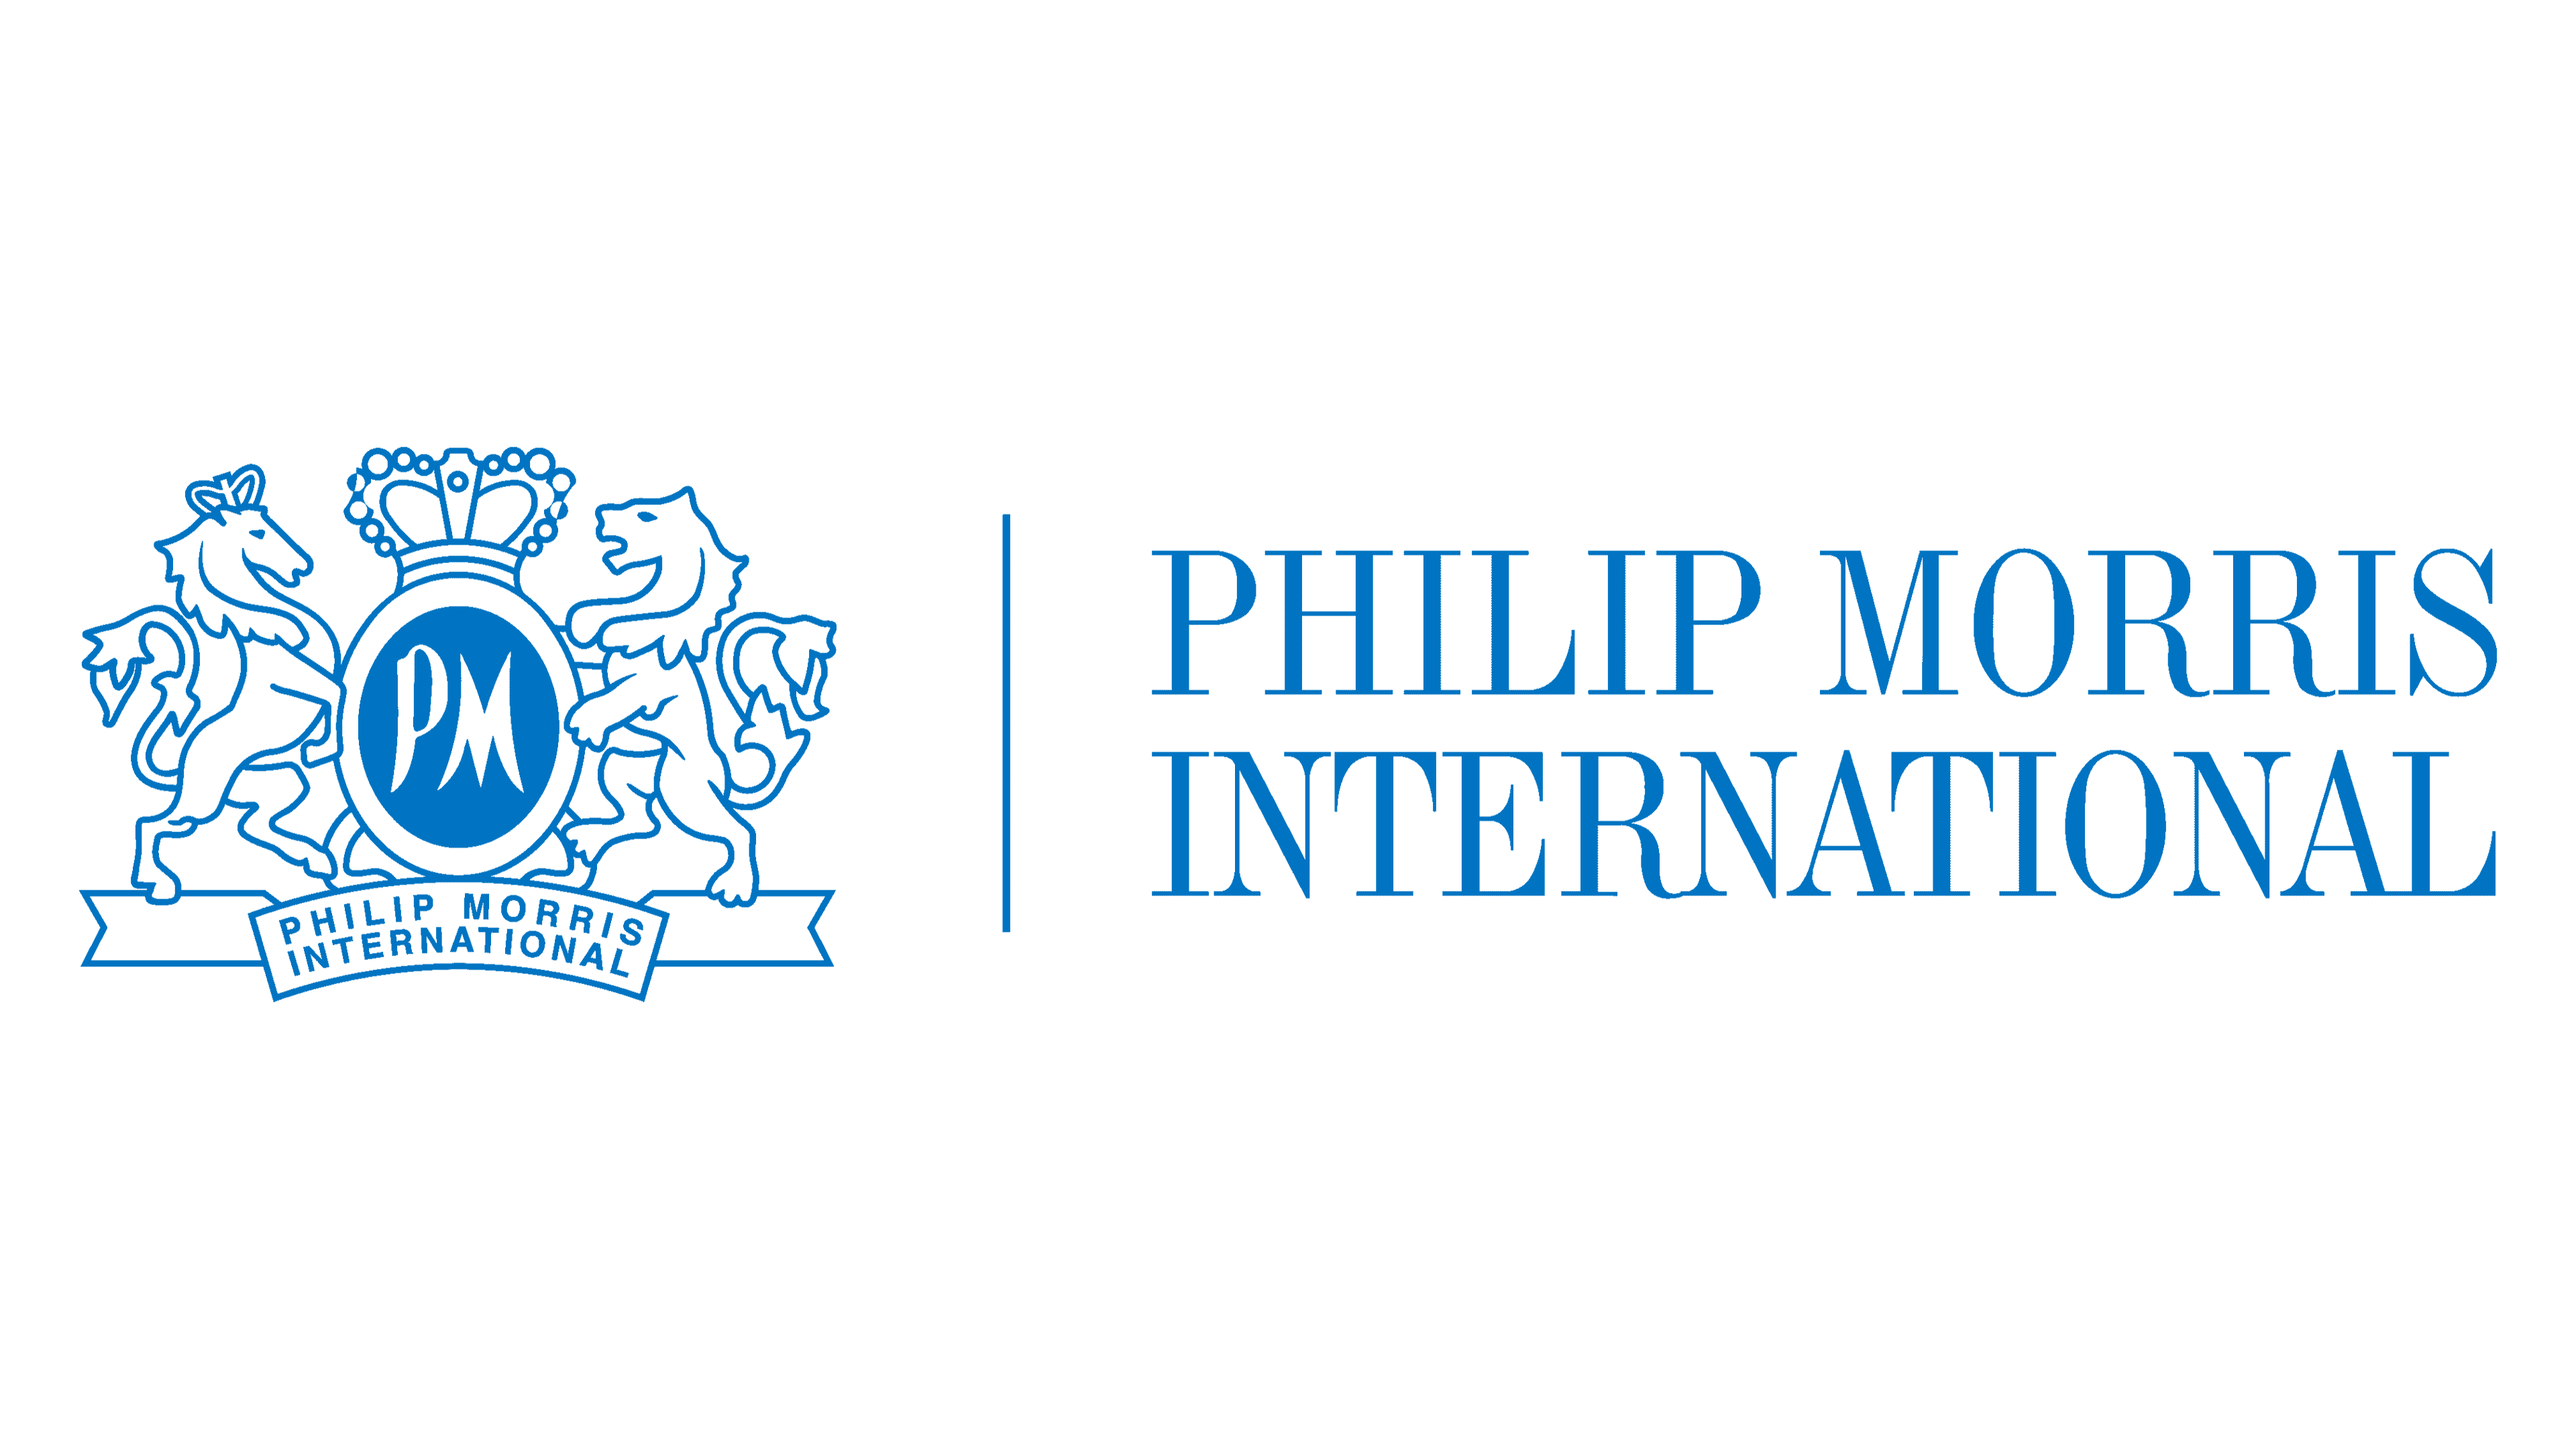 Филлип Моррис значок. Philip Morris International в России. Philip Morris International логотип. Филип Моррис Украина.